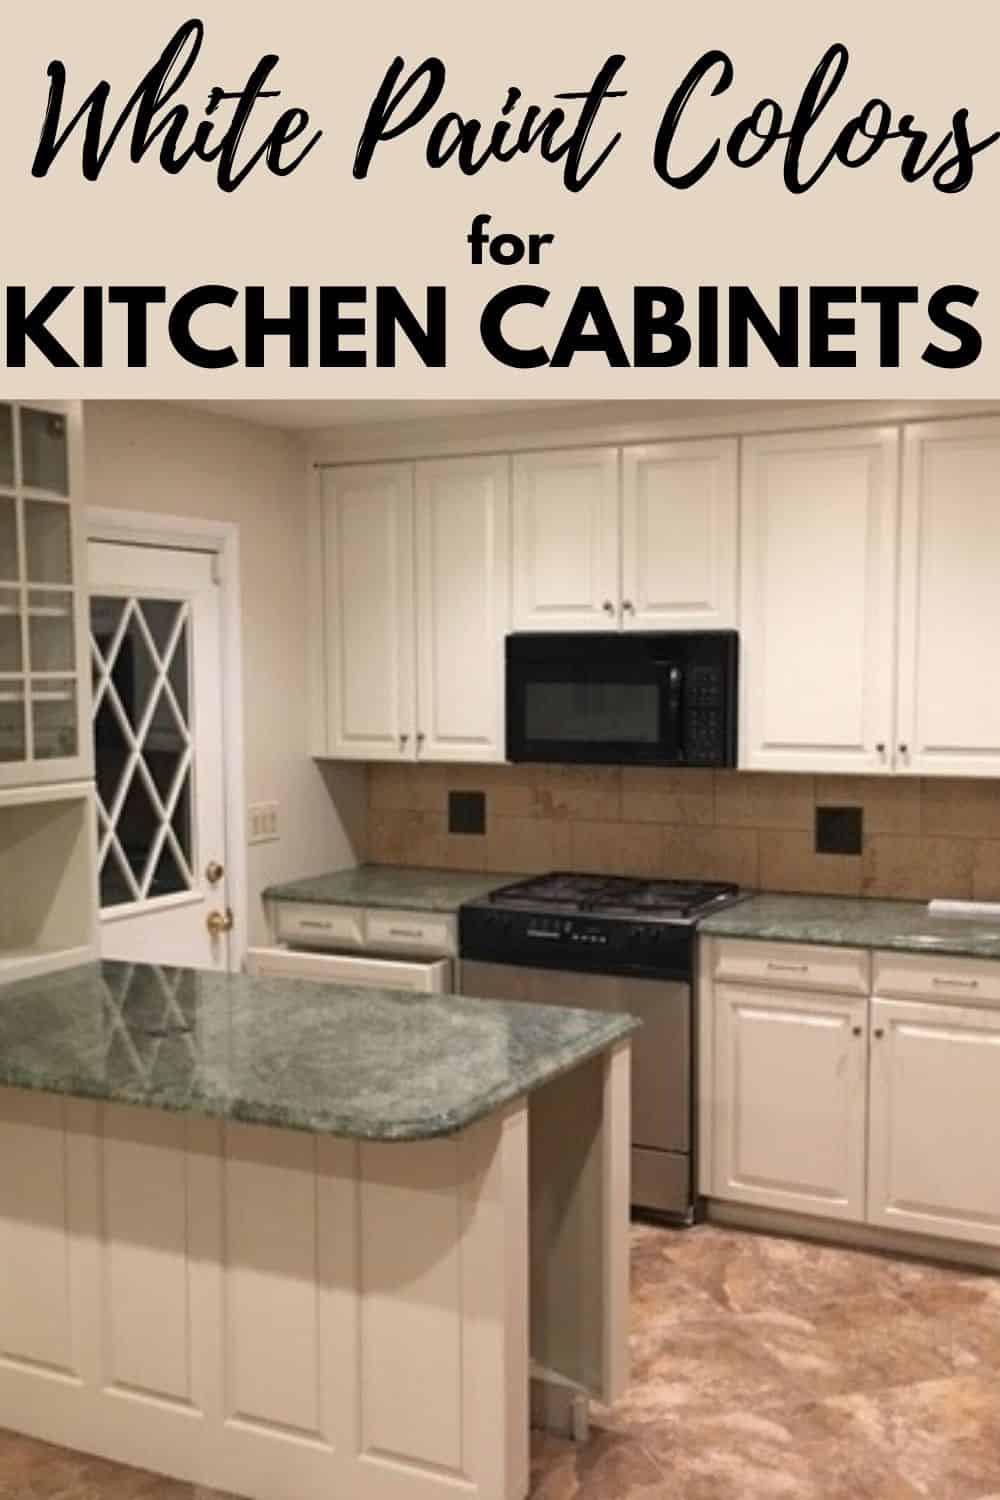 Popular Kitchen Cabinet Paint Colors - West Magnolia Charm